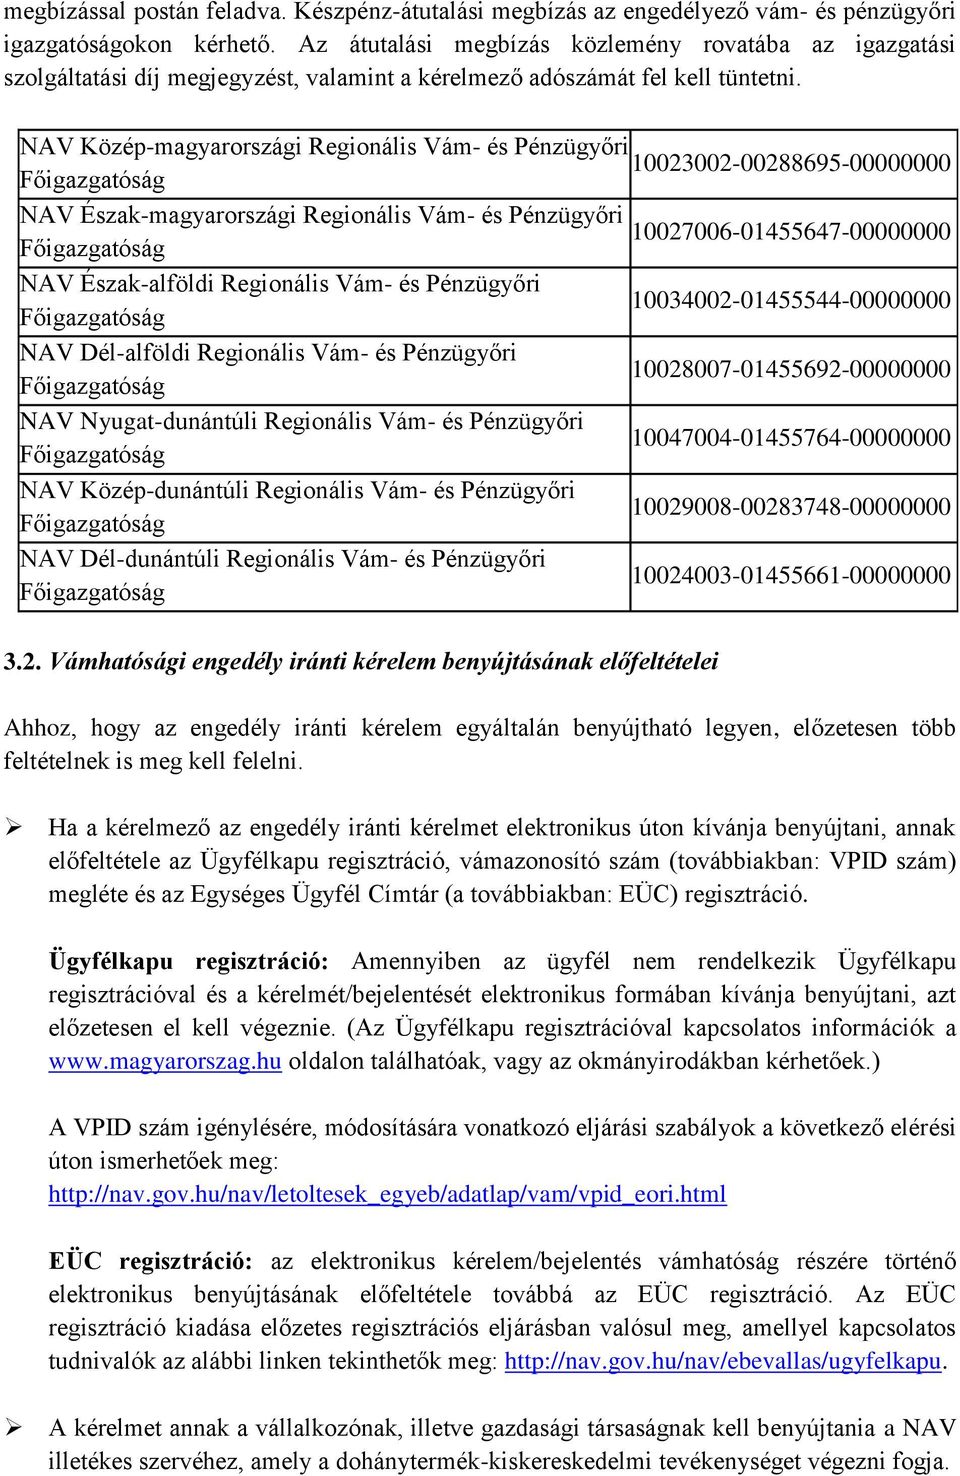 NAV Közép-magyarországi Regionális Vám- és Pénzügyőri 10023002-00288695-00000000 NAV Észak-magyarországi Regionális Vám- és Pénzügyőri 10027006-01455647-00000000 NAV Észak-alföldi Regionális Vám- és